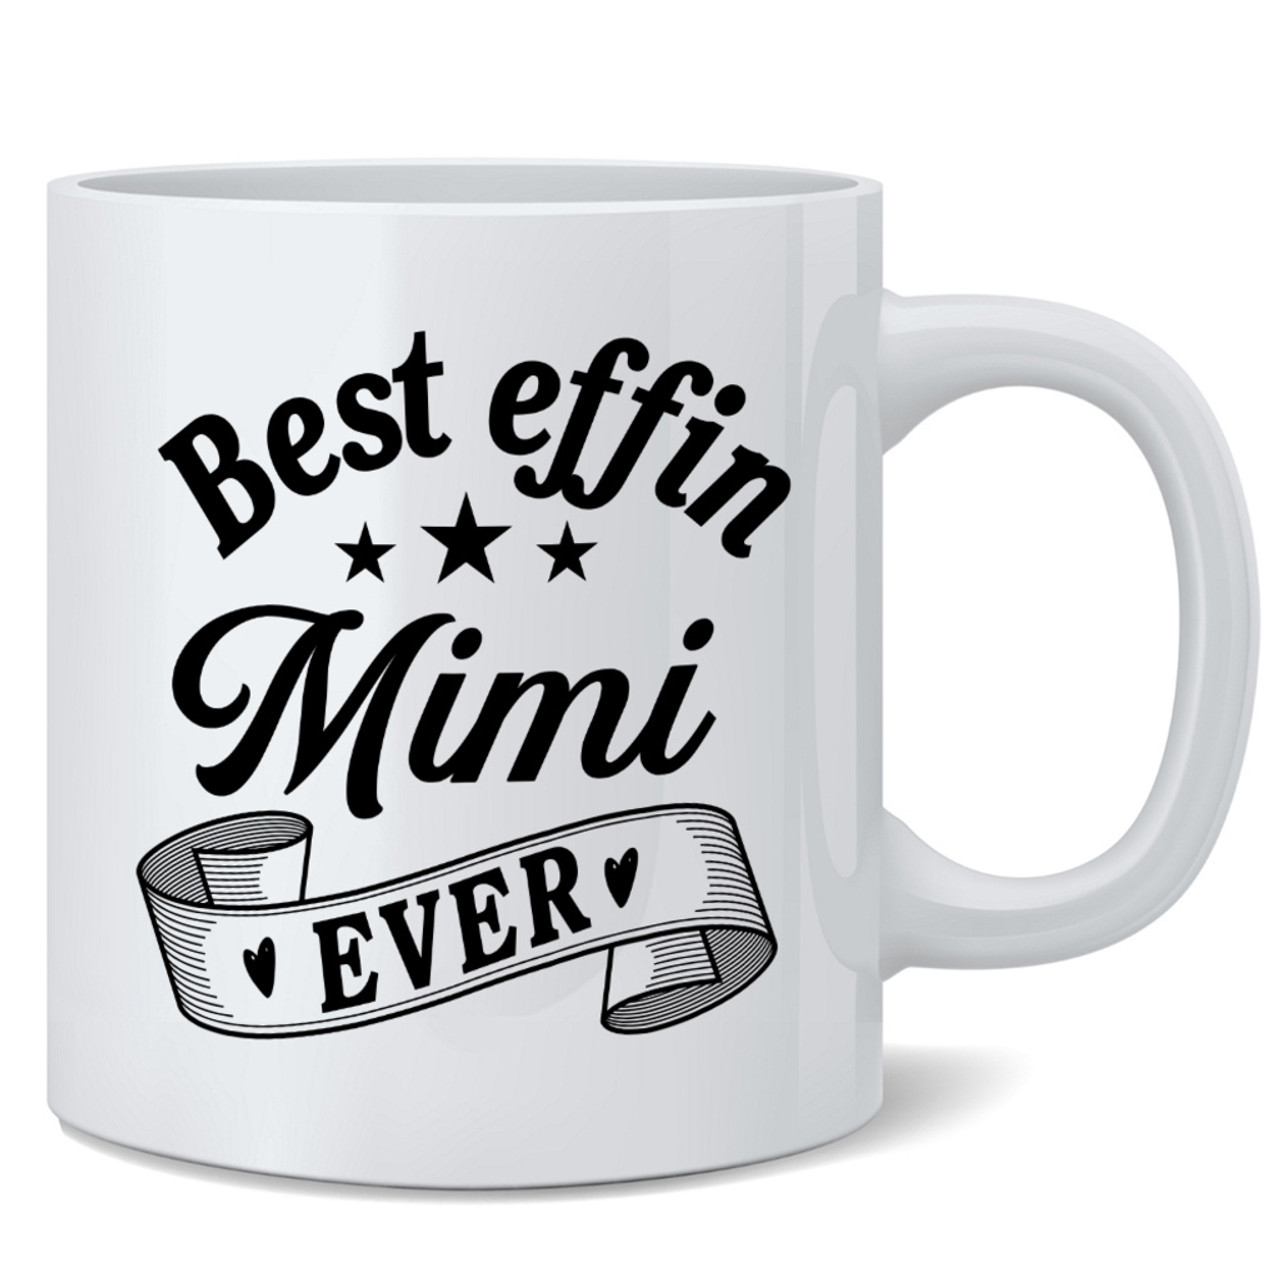 Funny Coffee Mugs  Not the Worst Mom Coffee Mug or Coffee Cup